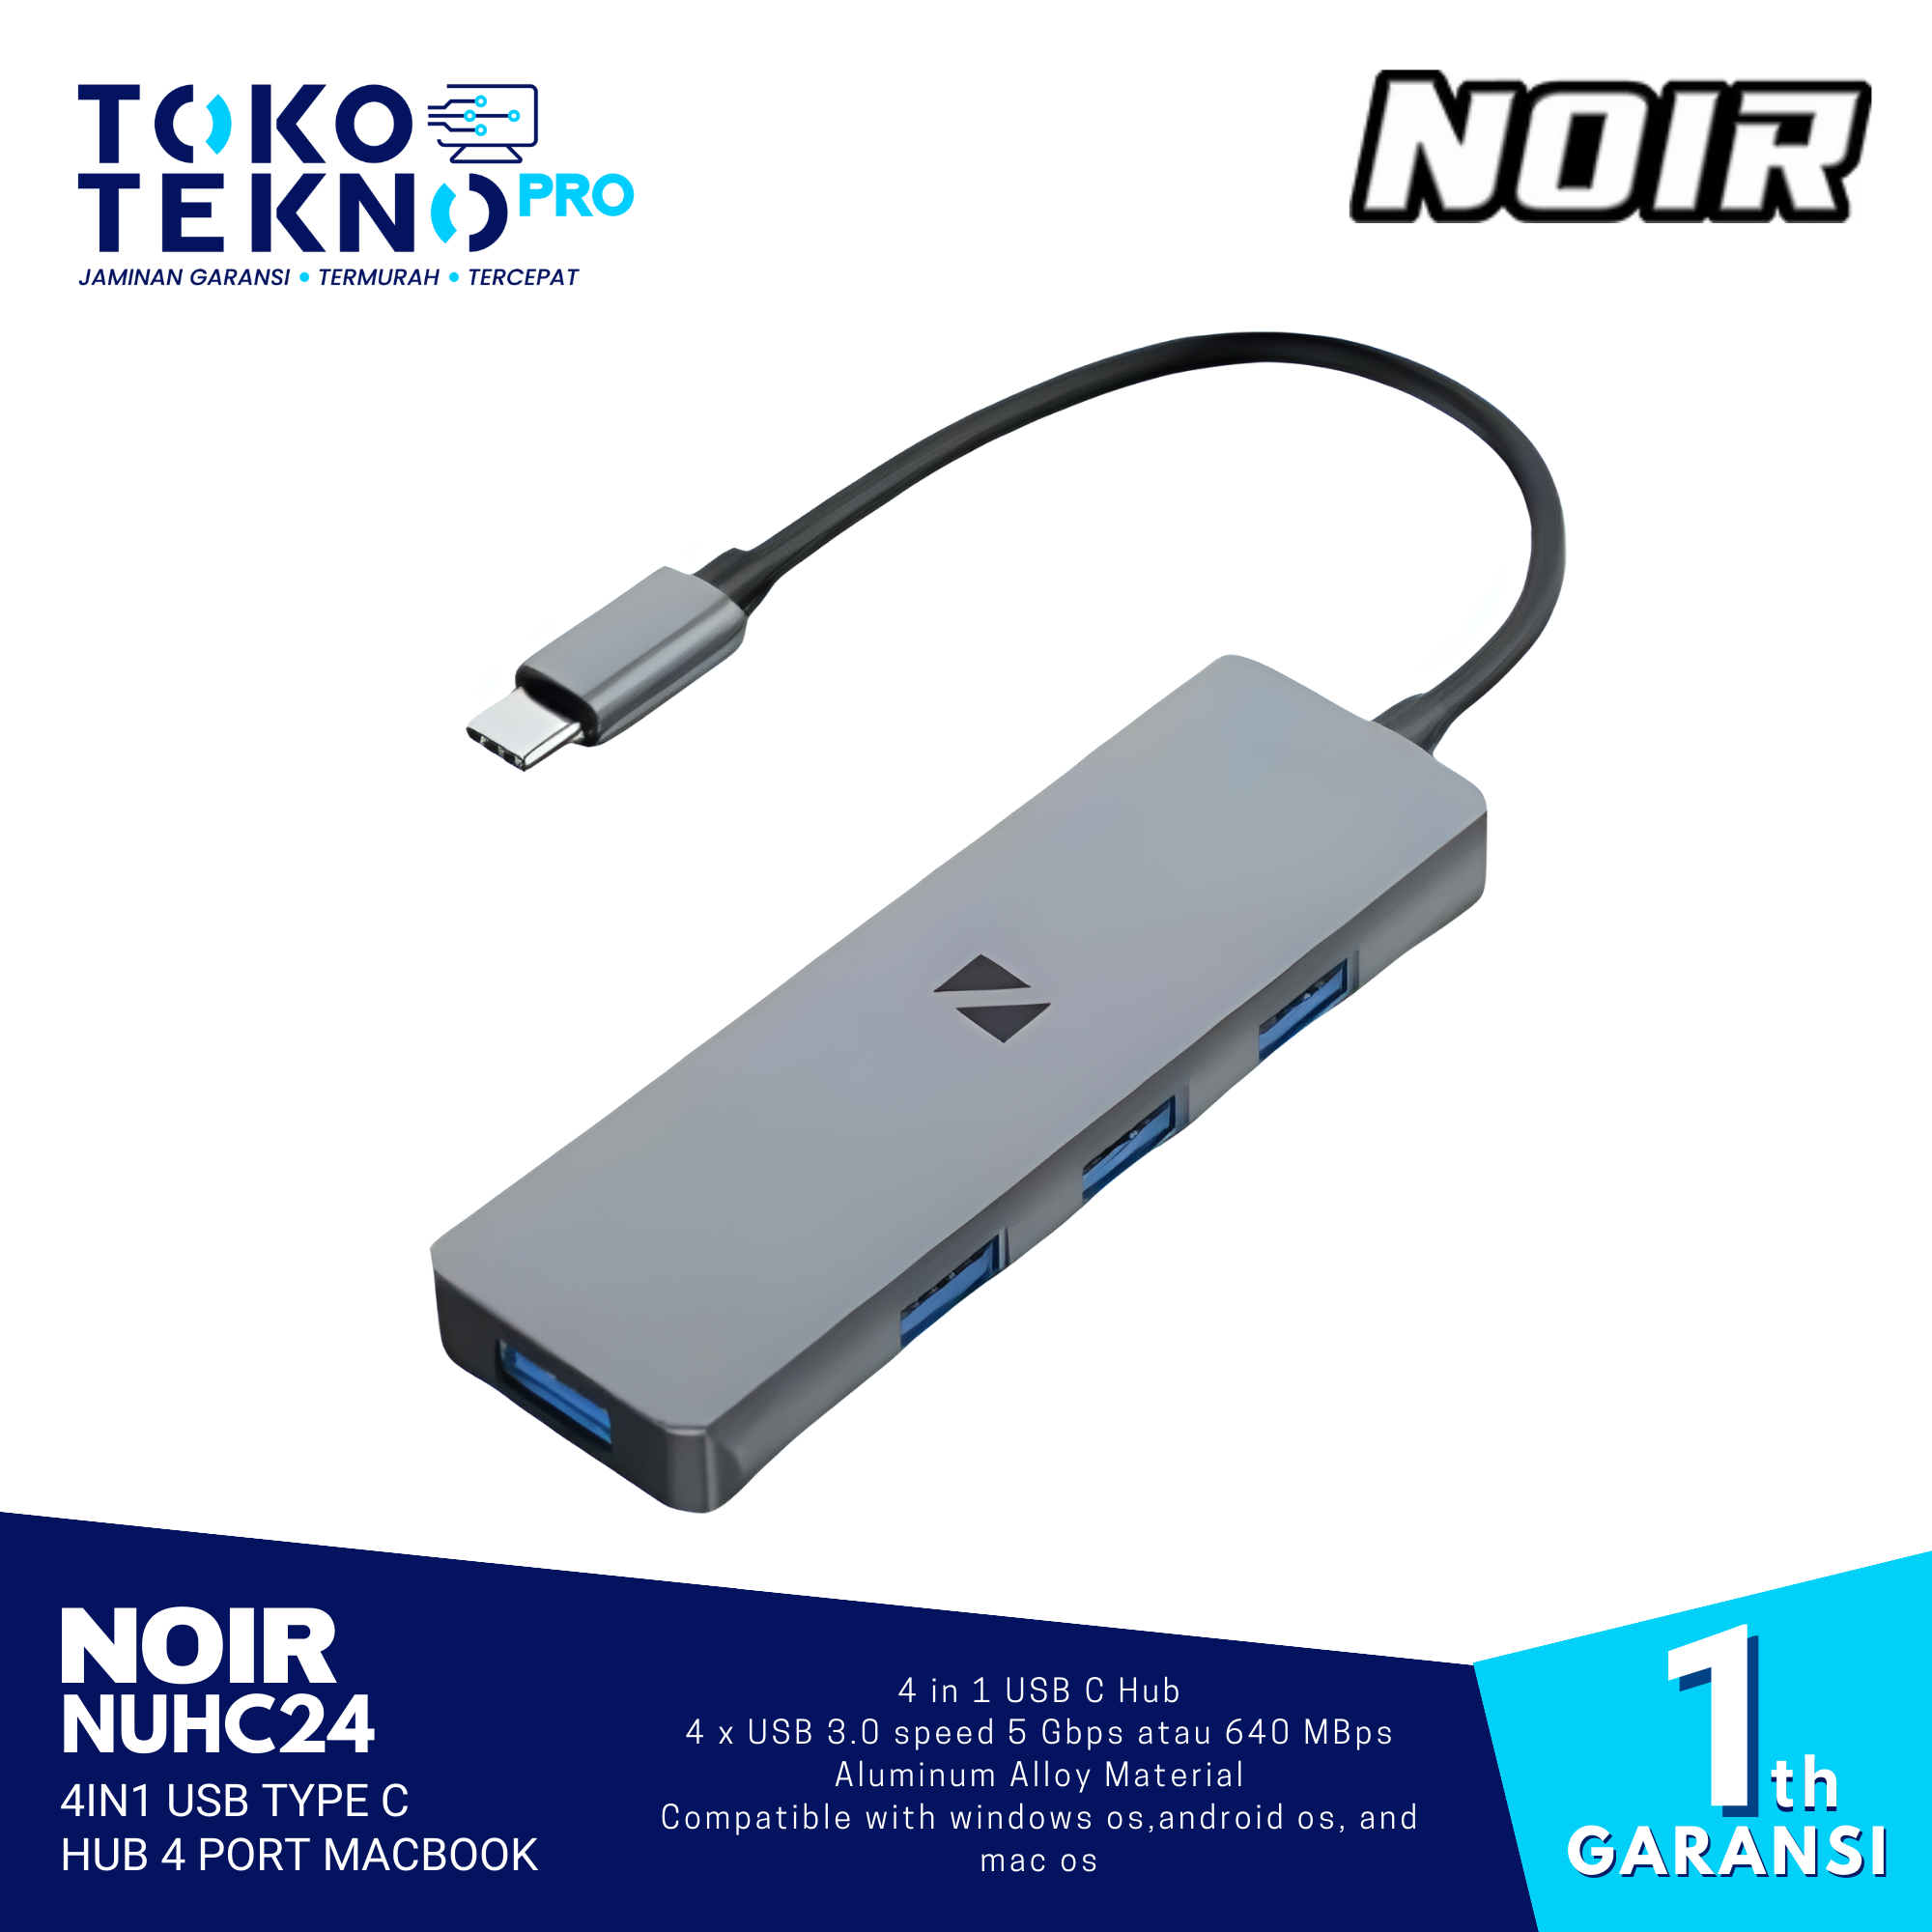 Noir NUHC24 4in1 USB type C Hub 4 port Macbook